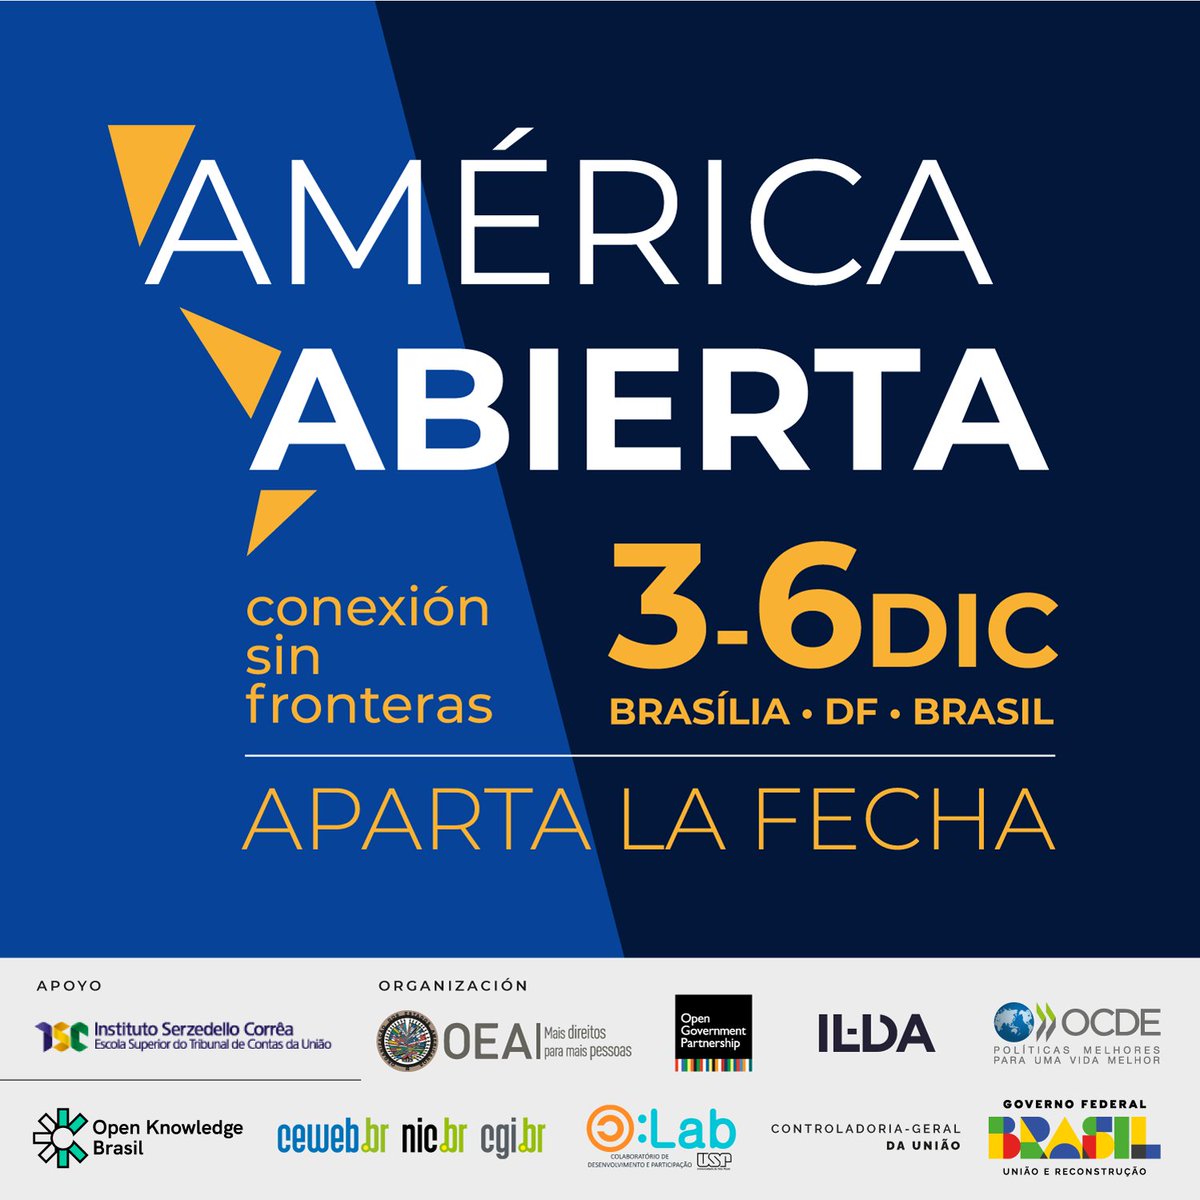 📢 ¡Aparta la fecha! ¡Brasil será sede de #AméricaAbierta del 3 al 6 de diciembre, en Brasilia! Participa en esta serie de encuentros internacionales enfocados en datos abiertos, transparencia, acceso a la información, gobierno abierto, y más. 🧵